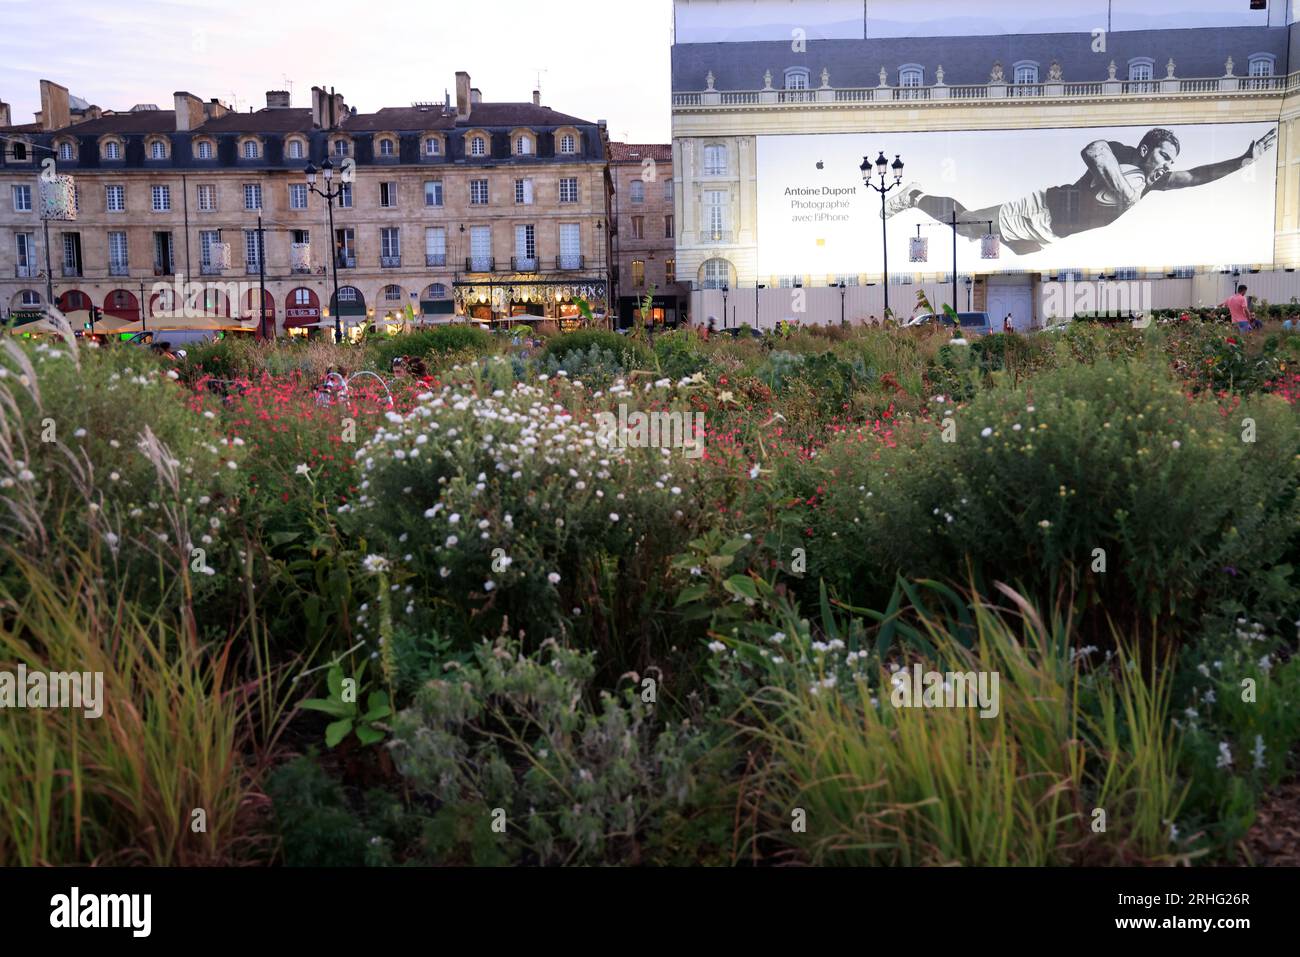 Fin de journée sur les quais de Bordeaux. Sur les bâtiments de la Place de la bourse une Photo d'Antoine Dupont de la campagne publicitaire Apple « pH Foto Stock